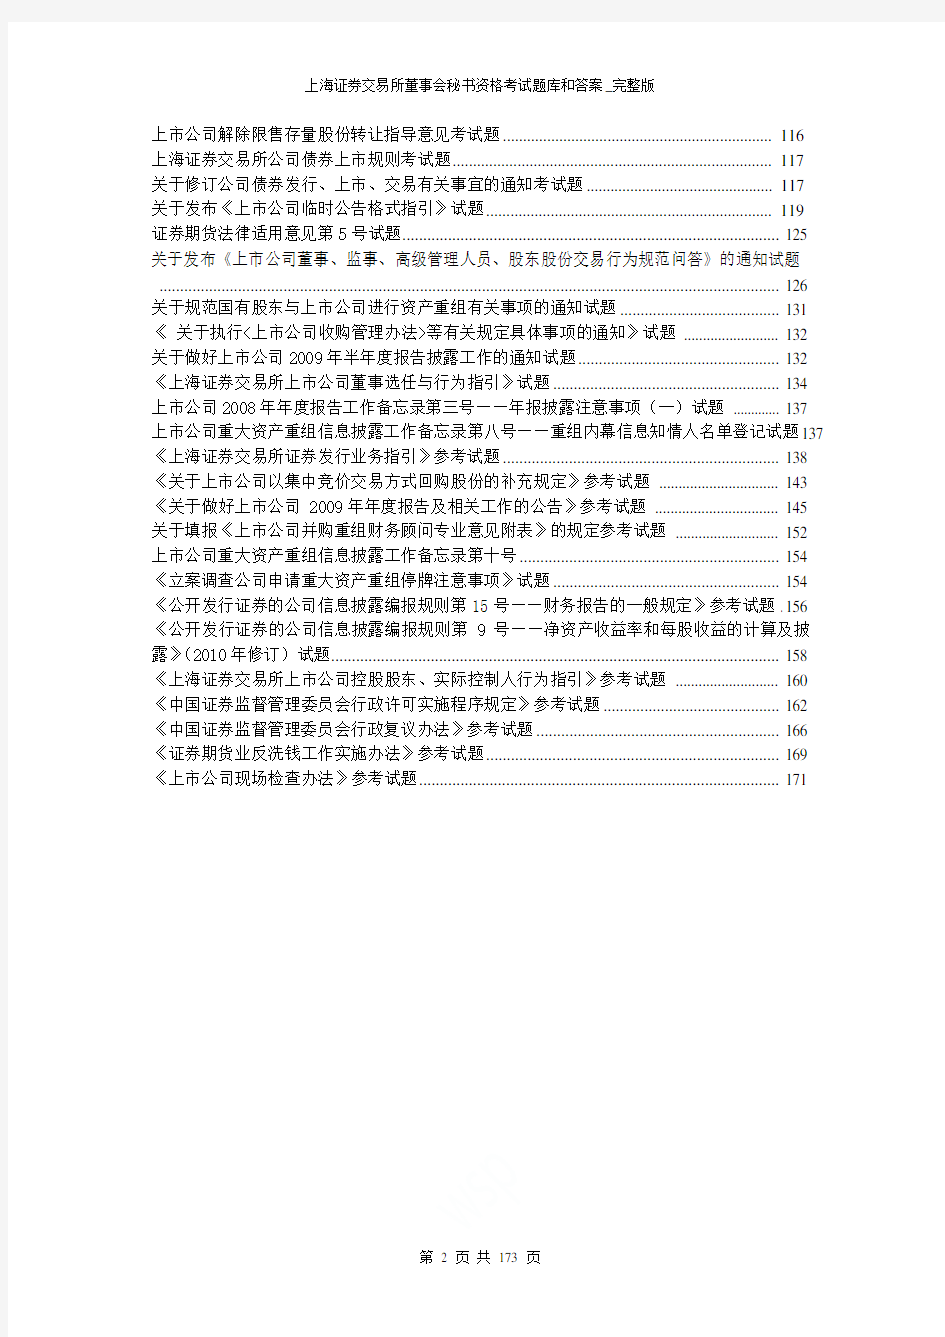 上海证券交易所董事会秘书资格考试题库和答案_完整版